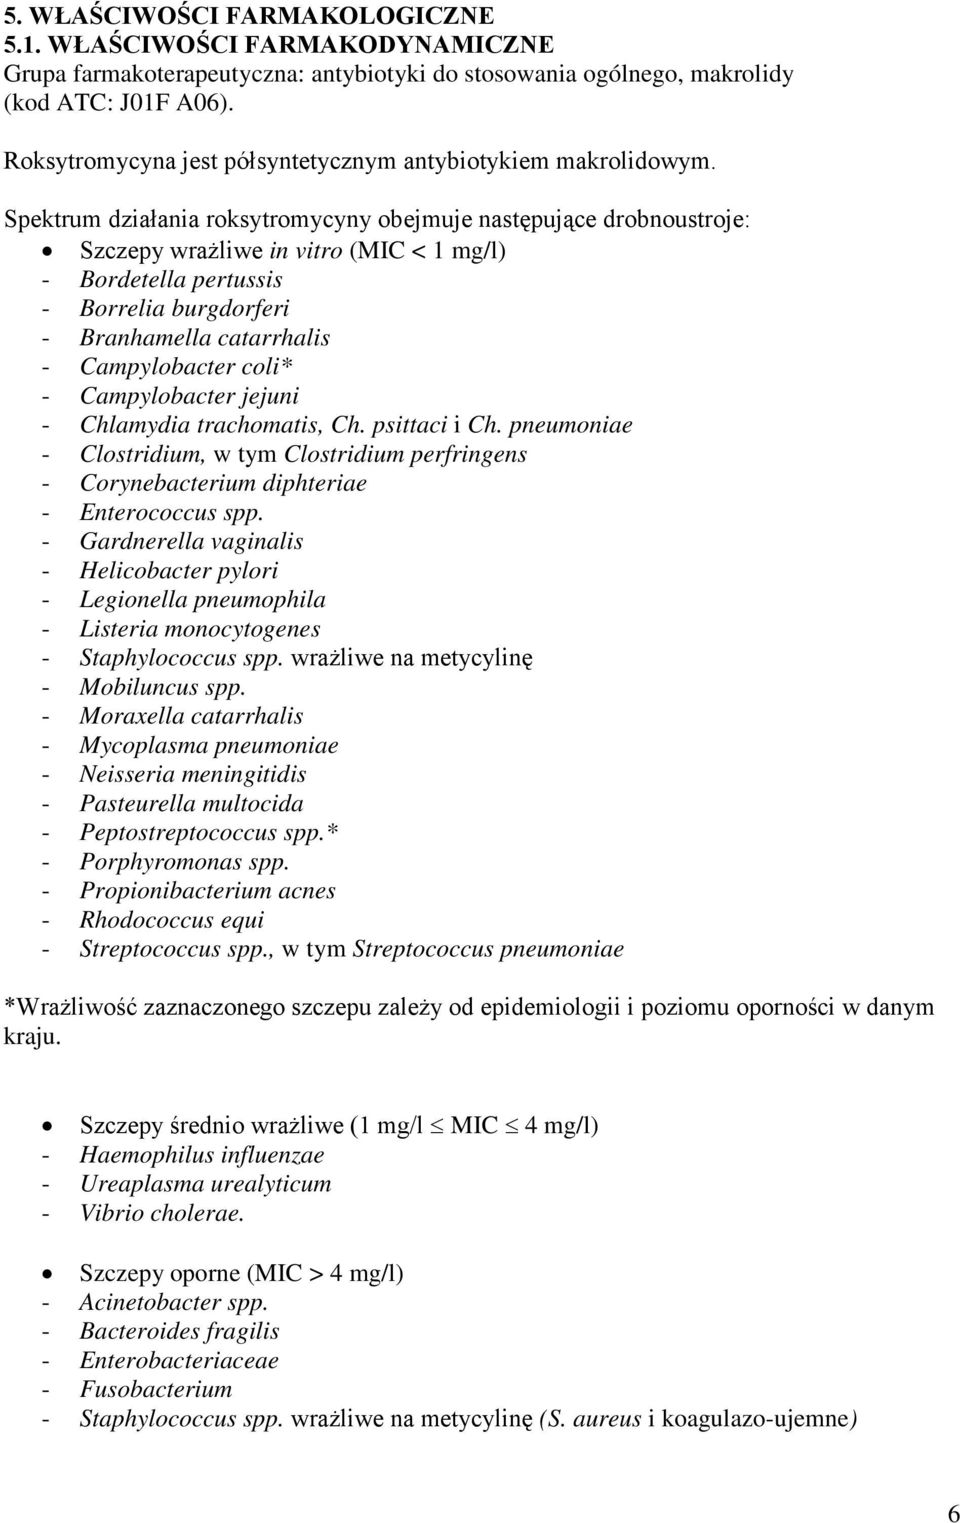 Spektrum działania roksytromycyny obejmuje następujące drobnoustroje: Szczepy wrażliwe in vitro (MIC < 1 mg/l) - Bordetella pertussis - Borrelia burgdorferi - Branhamella catarrhalis - Campylobacter